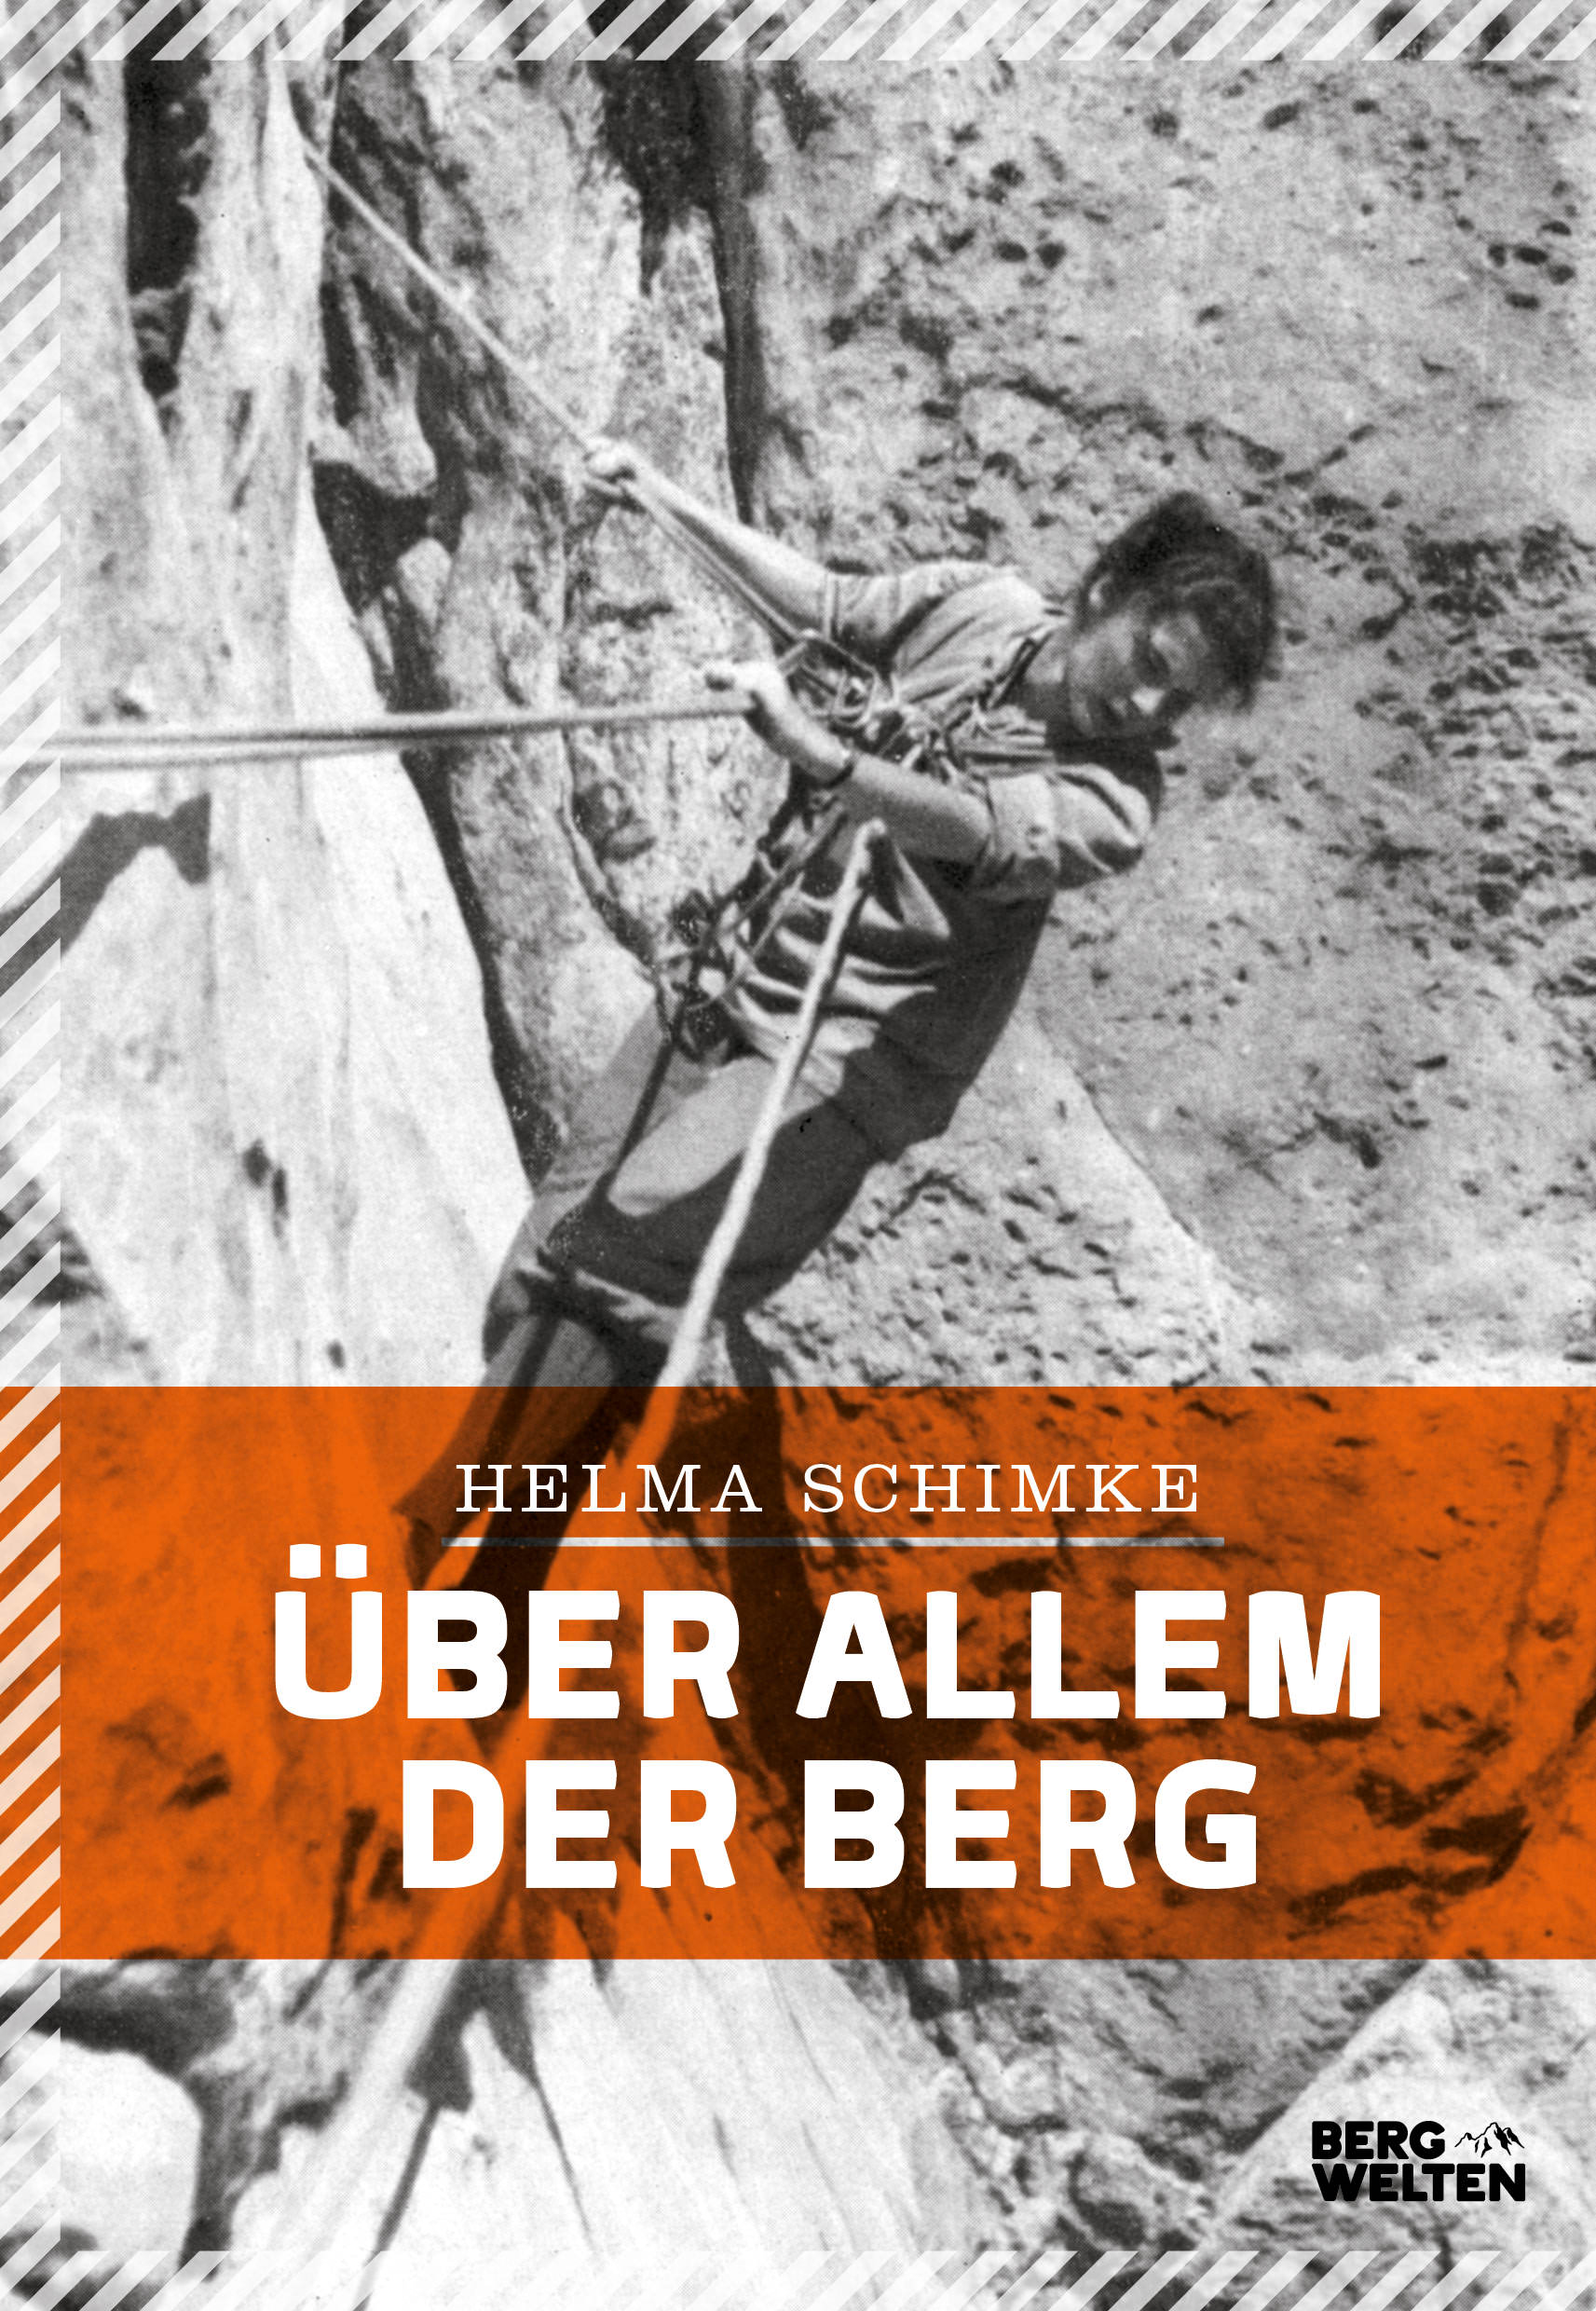 Buchcover: Helma Schimke: Über allem der Berg